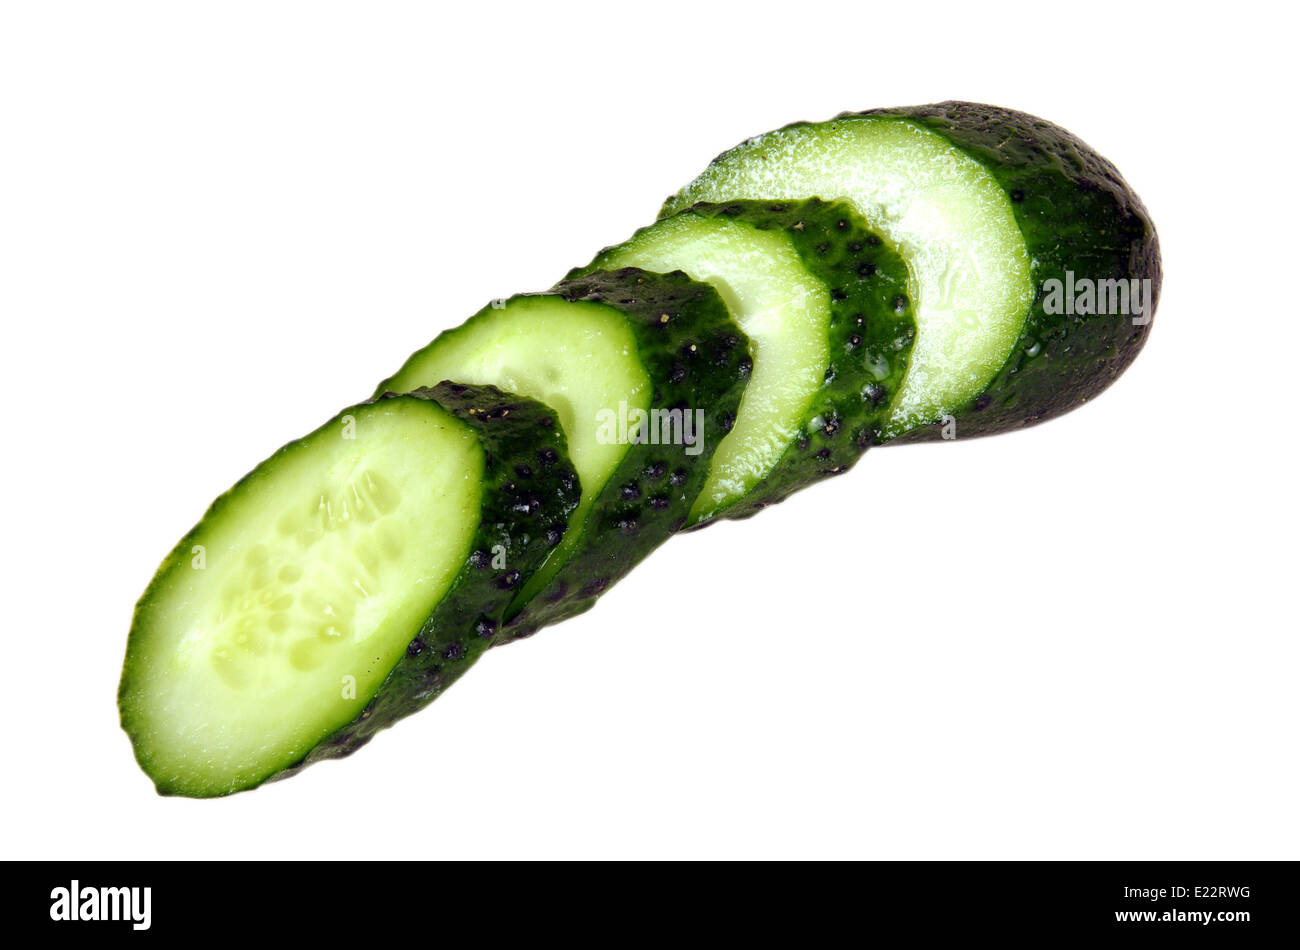 Gurken - Gemüse sehr lecker und nützlich. Es wird in den Küchen vieler Menschen verwendet. Stockfoto